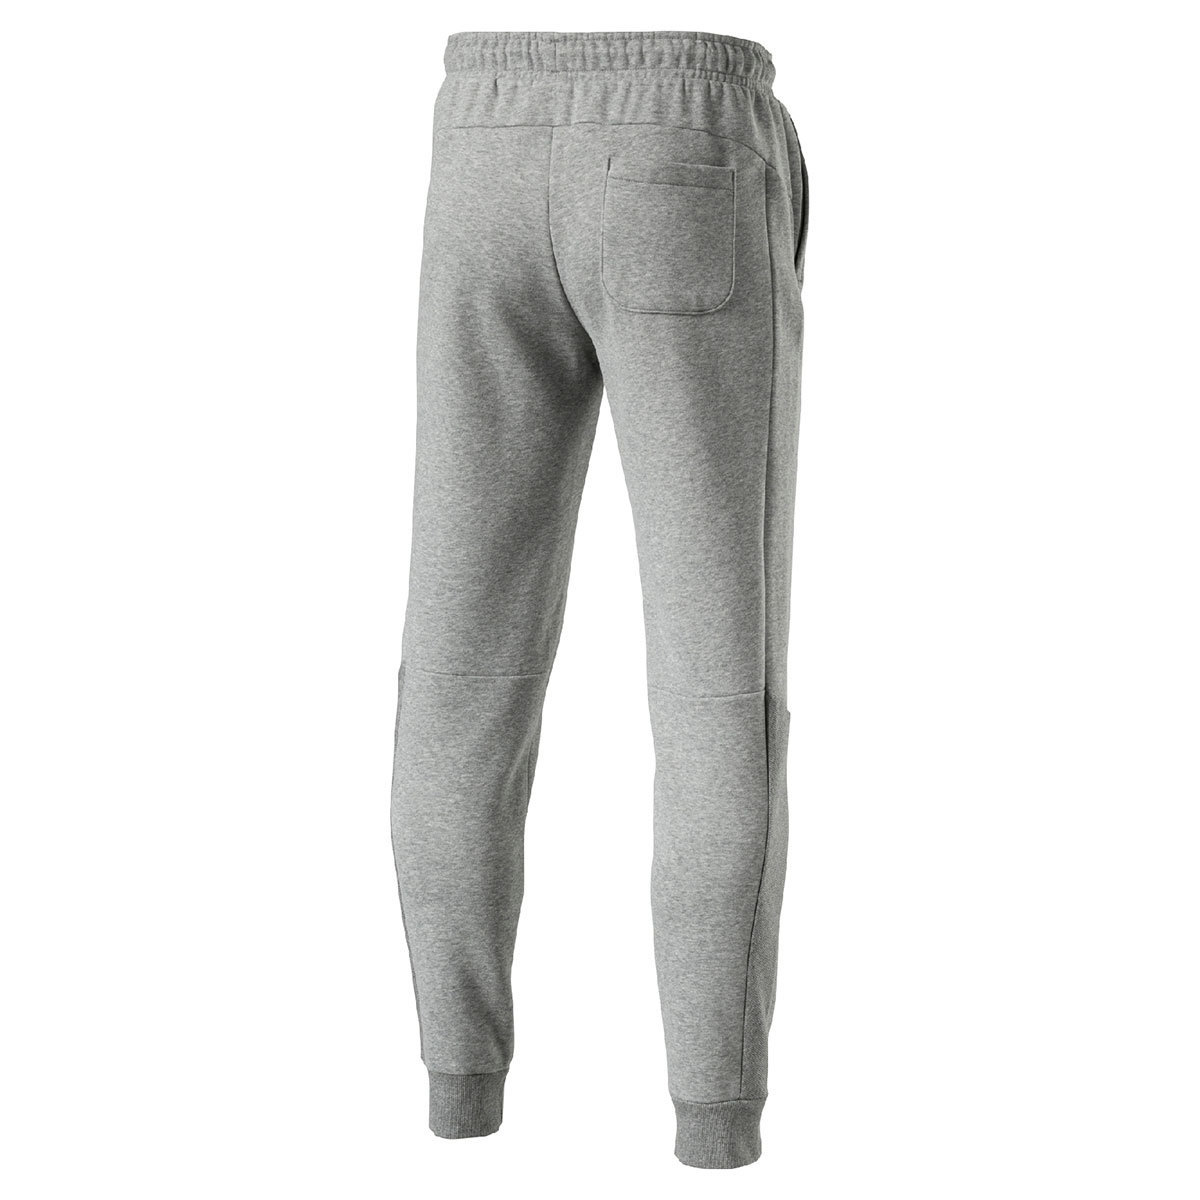 Puma Style Men's Athletic Pants, Grey - Extra Extra Large | Costco UK